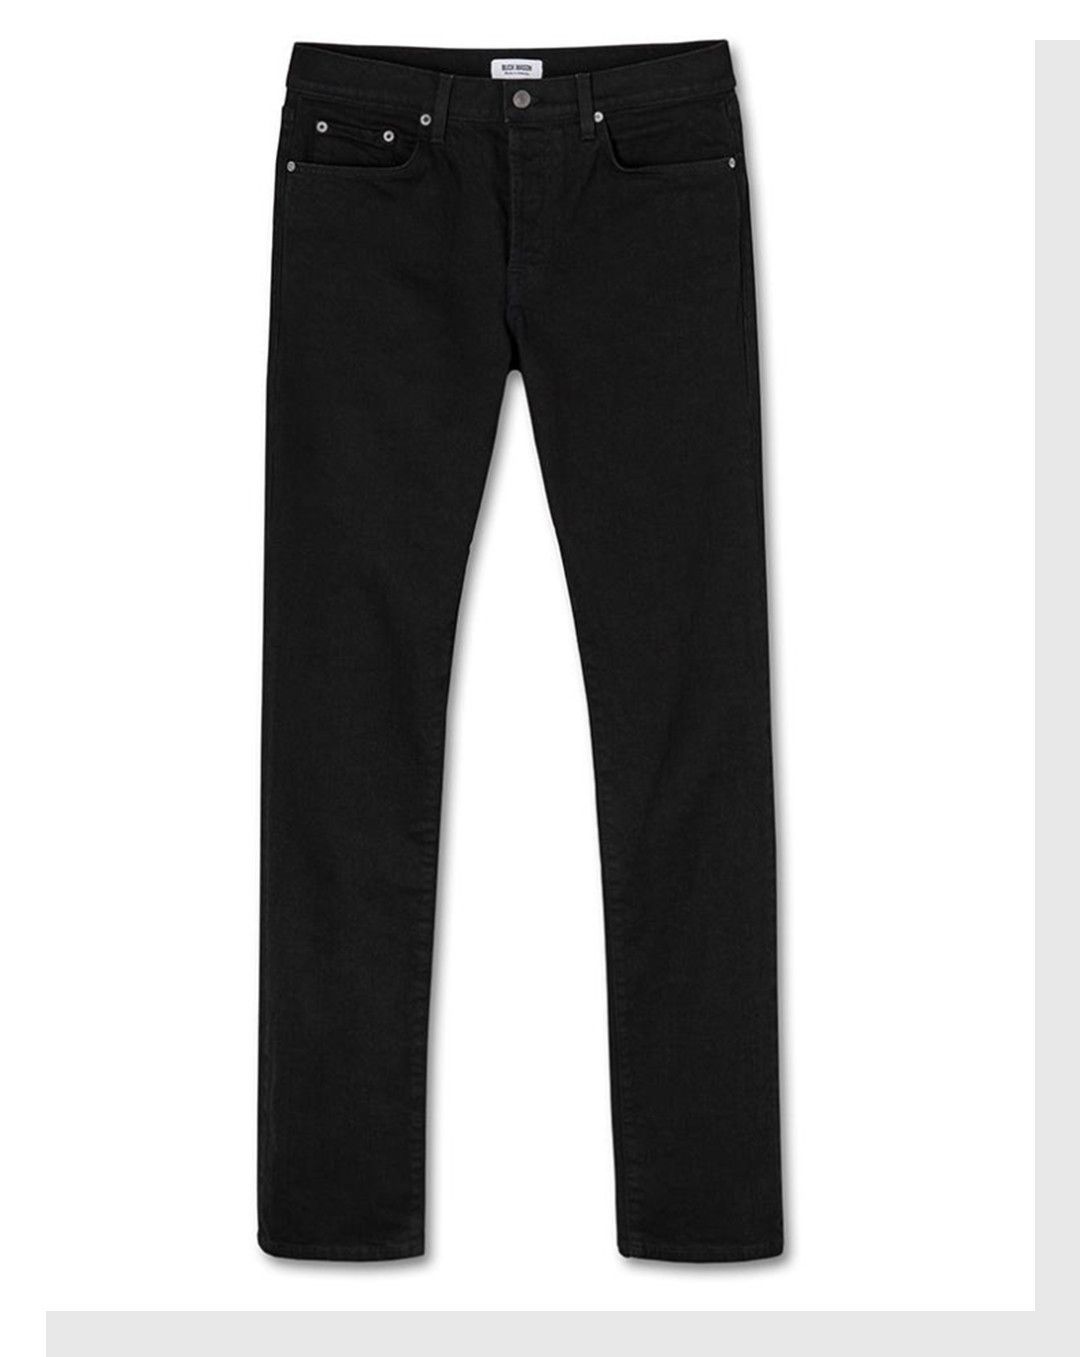 black premium jeans price